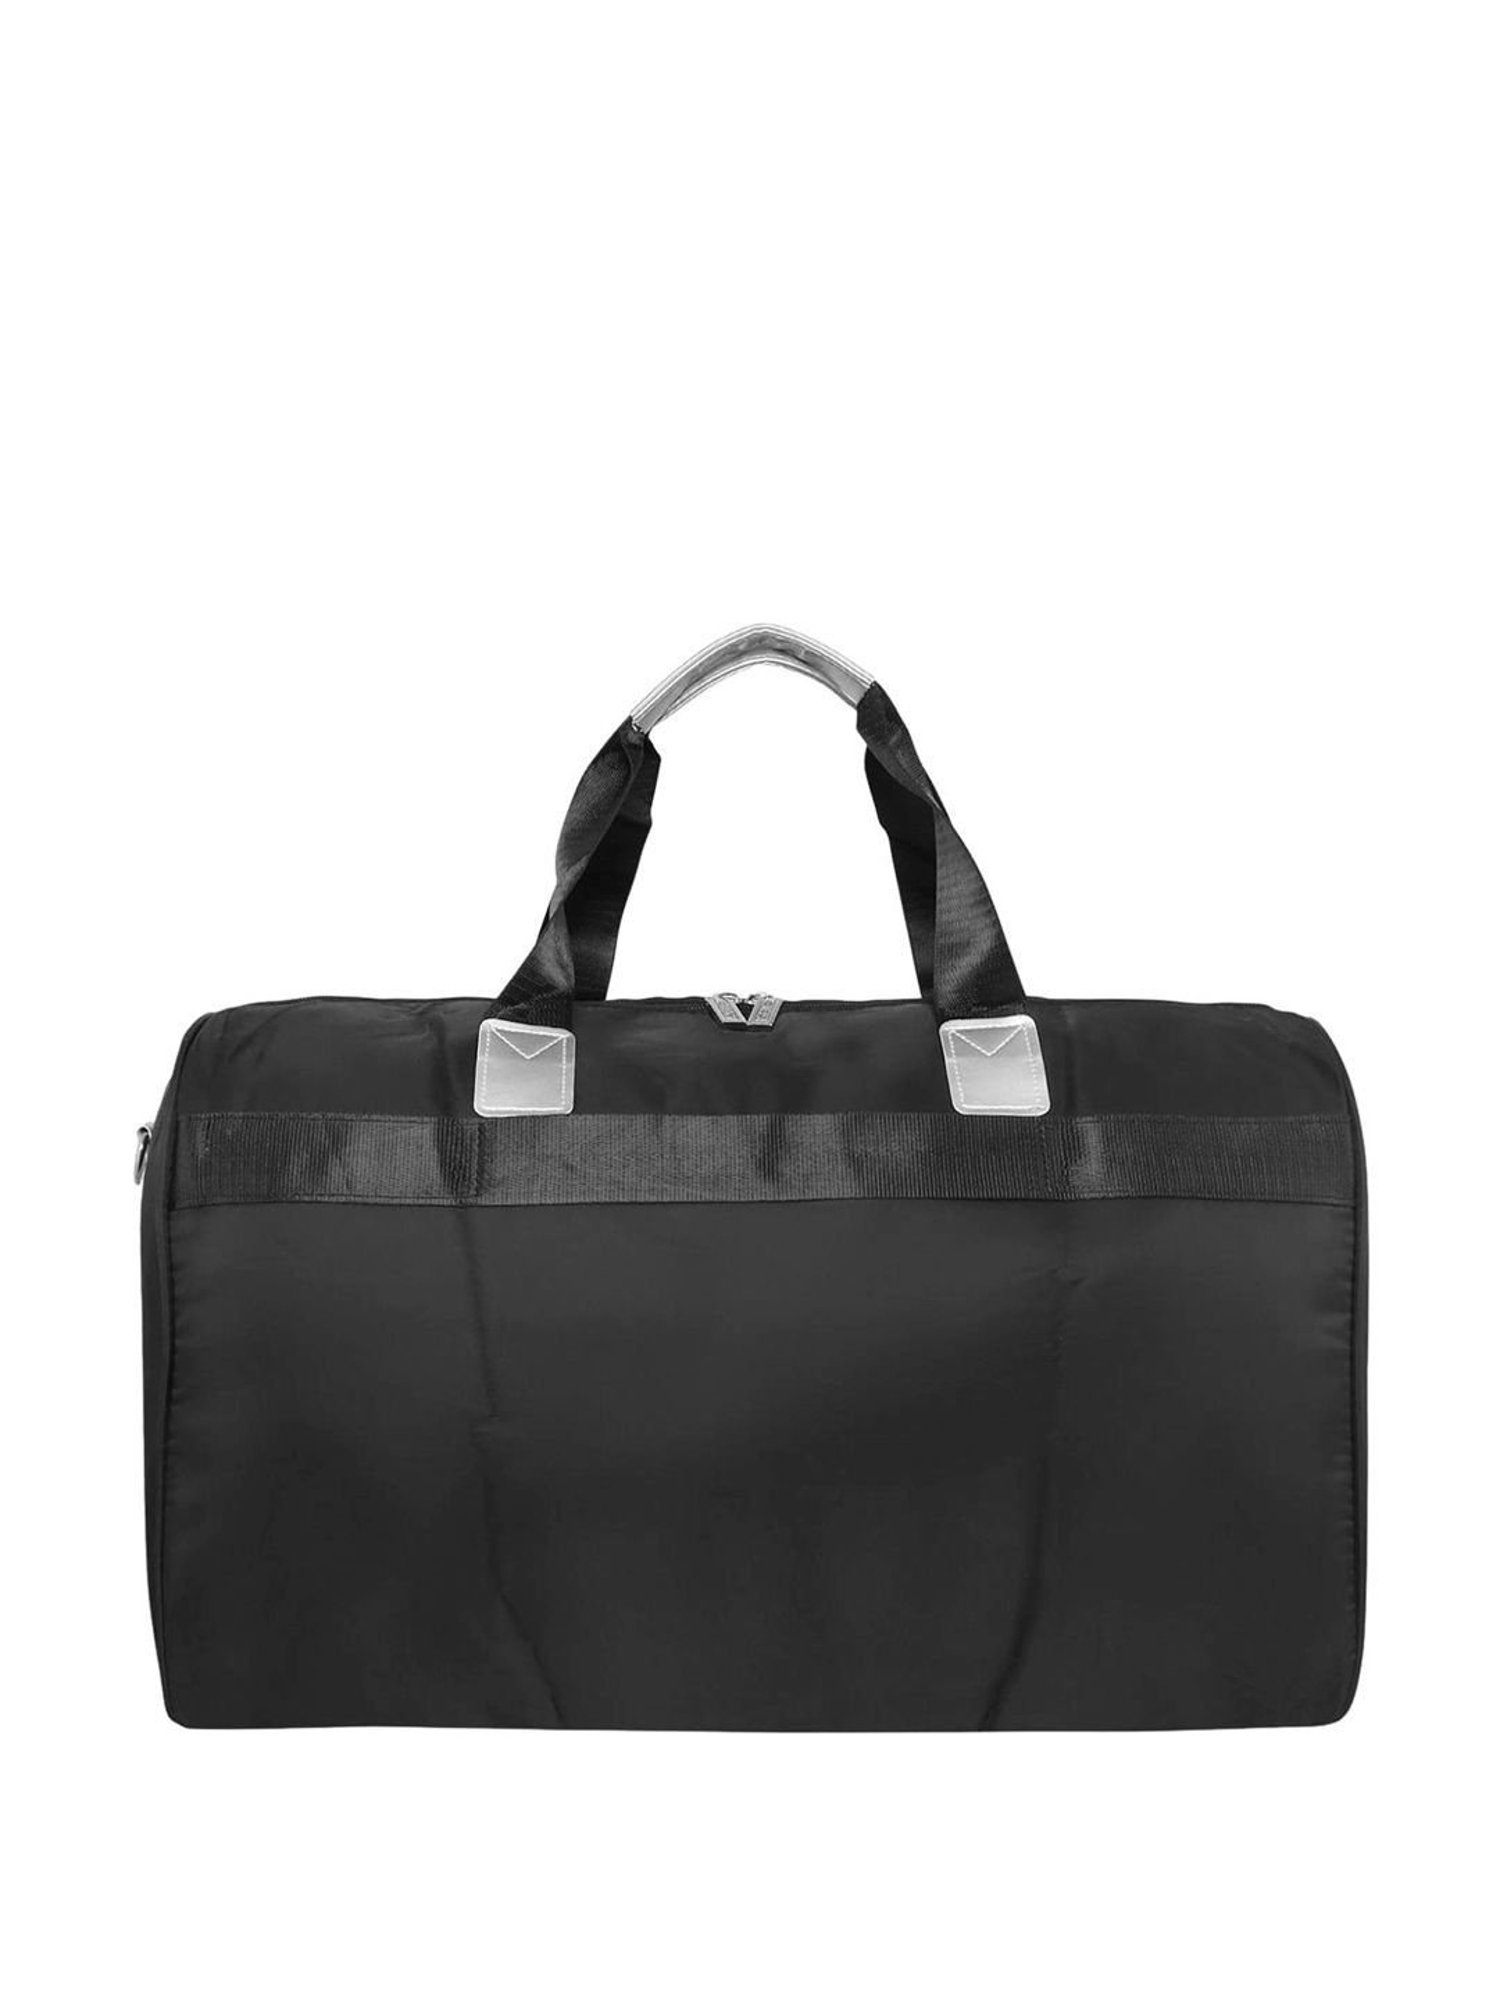 Khadim Black Duffel Bag for Men